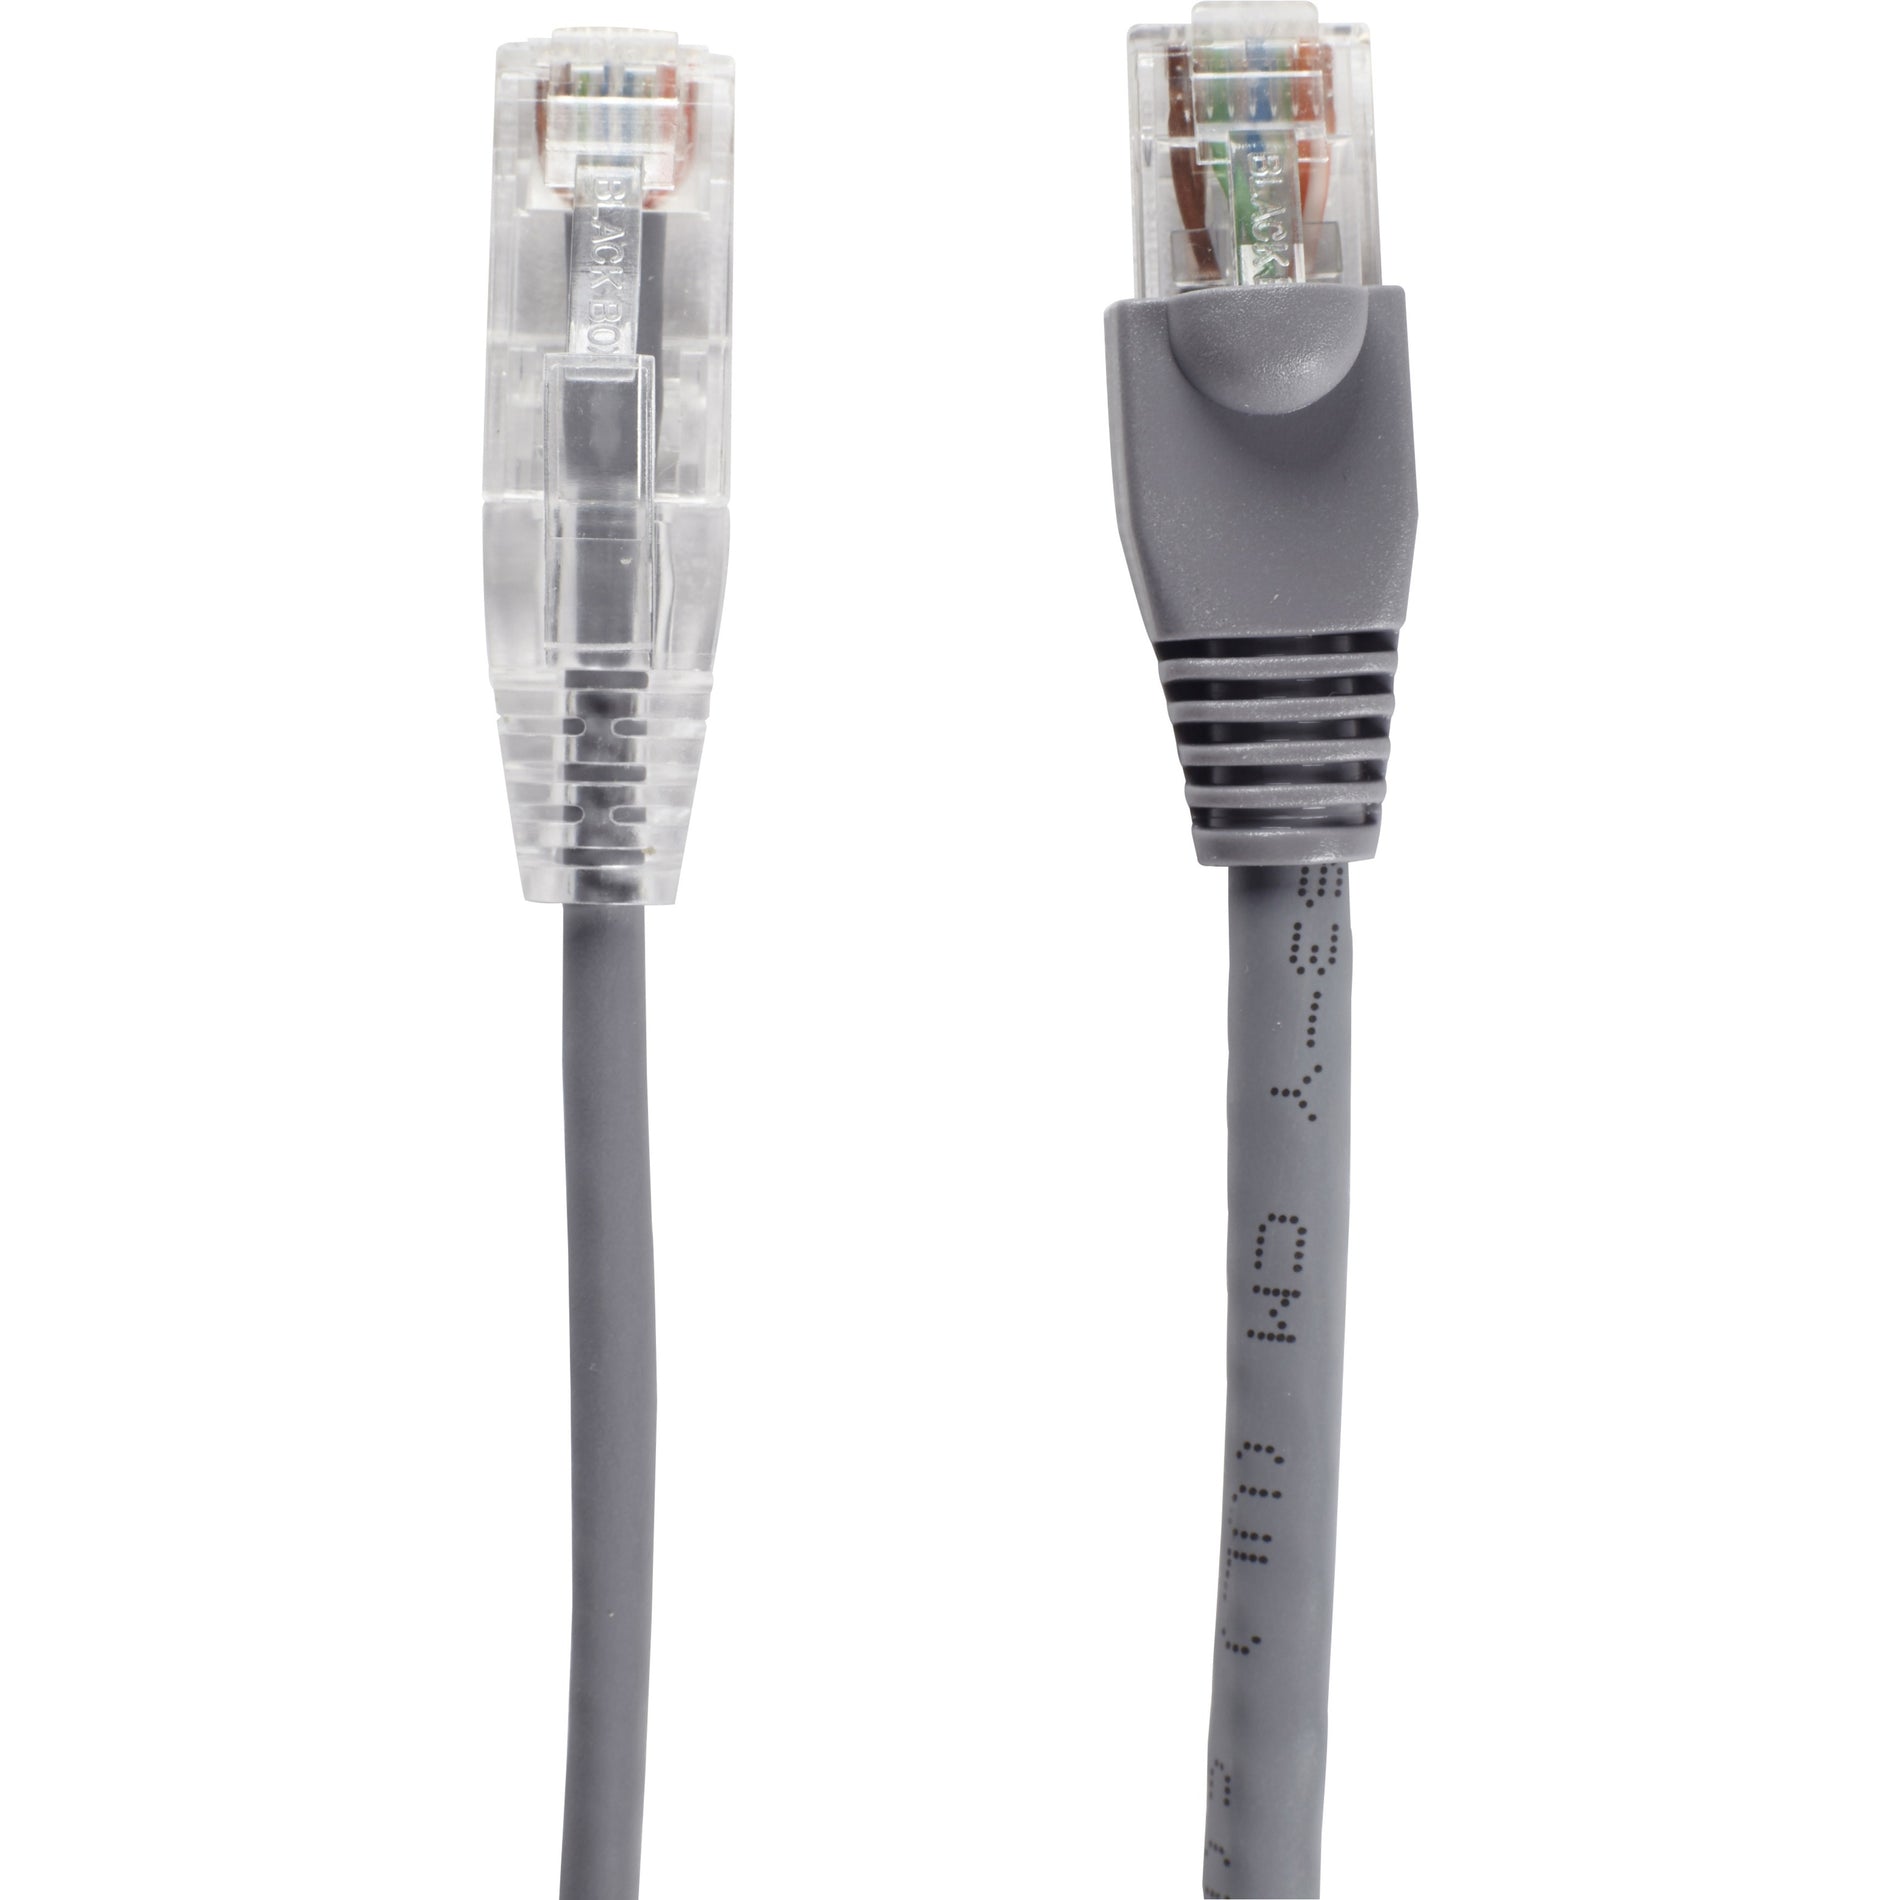 Black Box C6APC28-GY-02 Slim-Net Cat.6a UTP Patch Network Cable 2 ft 10 Gbit/s Black Box C6APC28-GY-02 Slim-Net Cat.6a Câble Réseau de Patch UTP 2 pi 10 Gbit/s